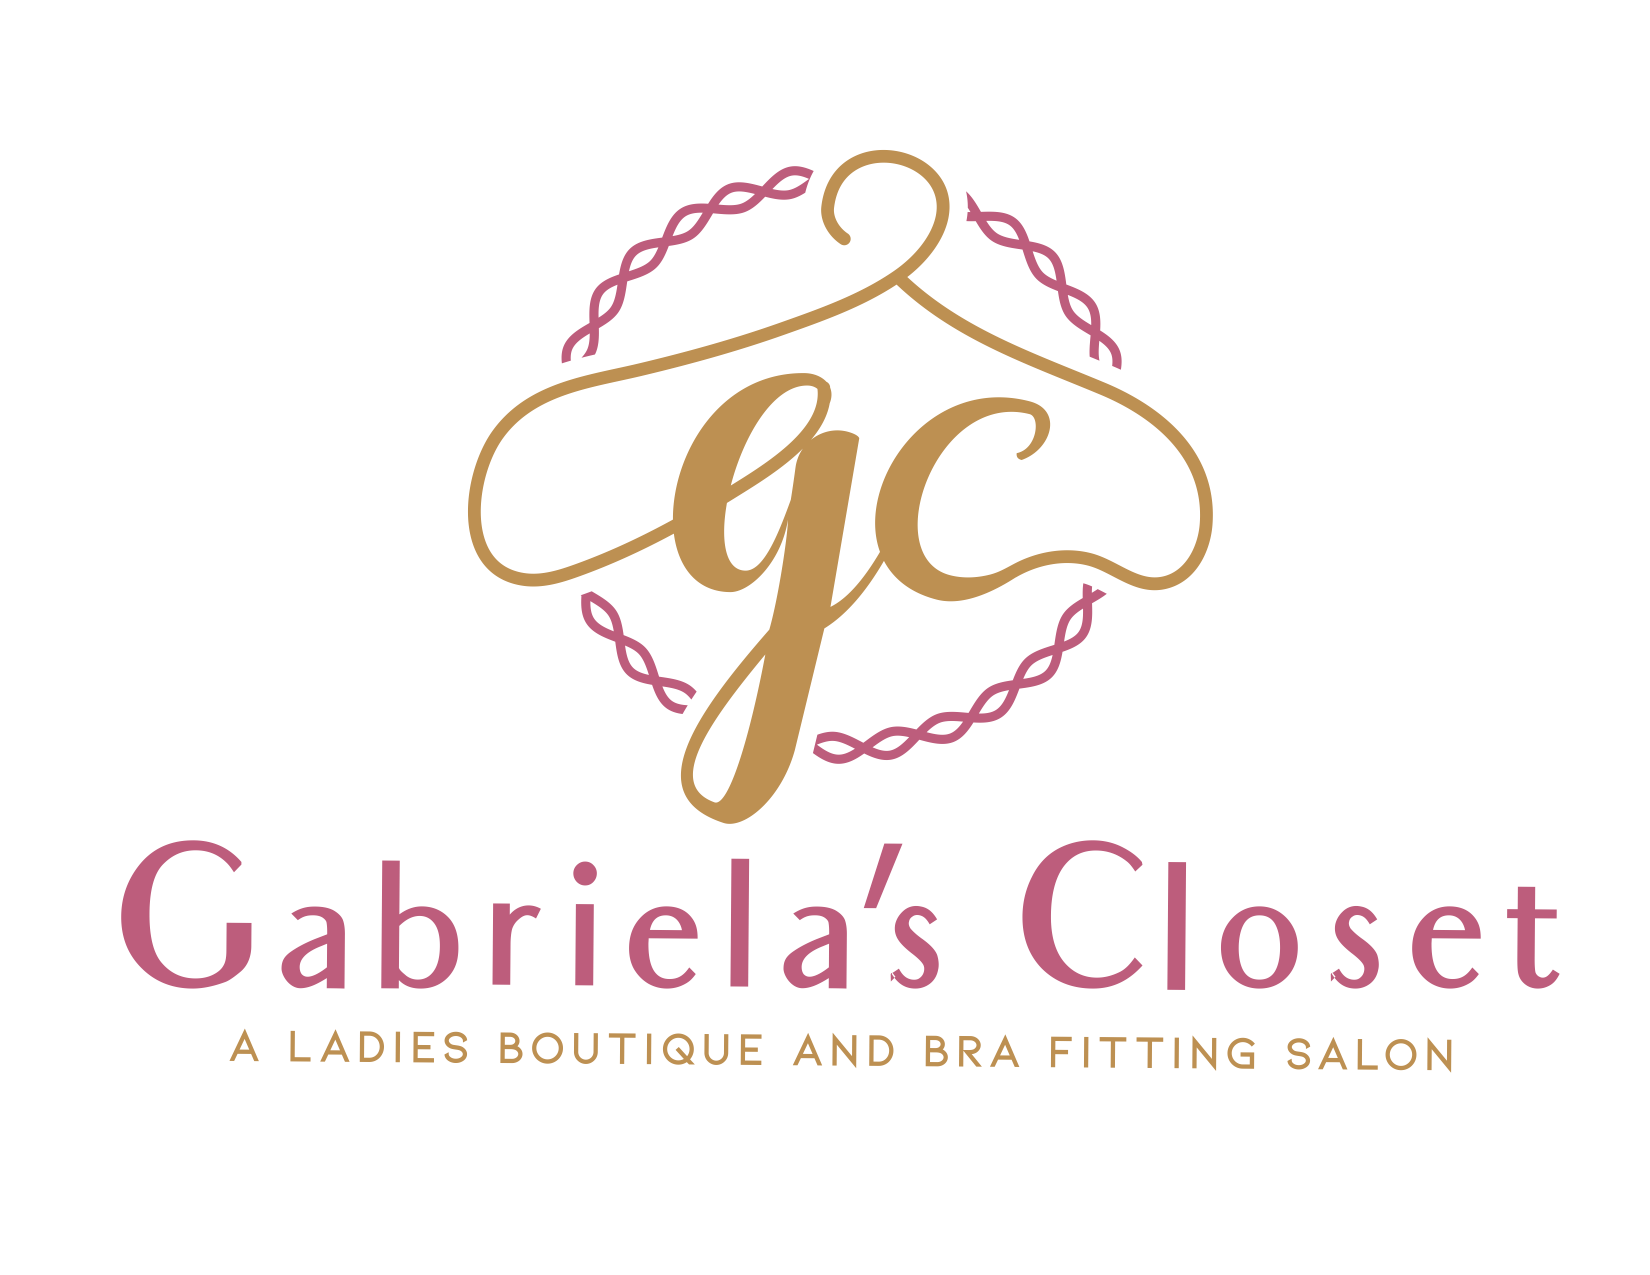 Gabriela's Closet